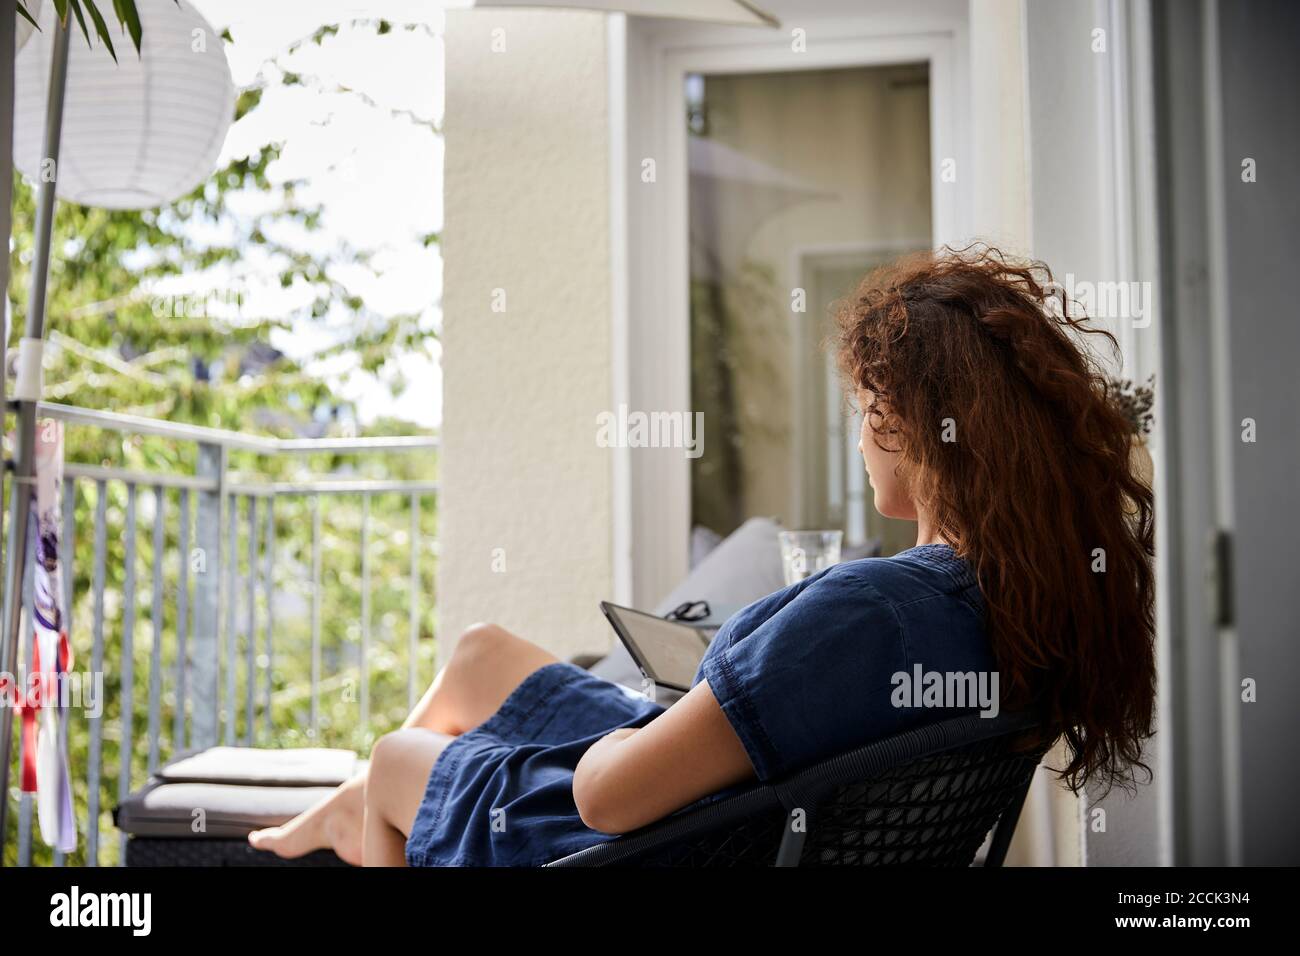 Frau liest aus E-Reader, während sie auf einem Stuhl auf dem Balkon sitzt Stockfoto